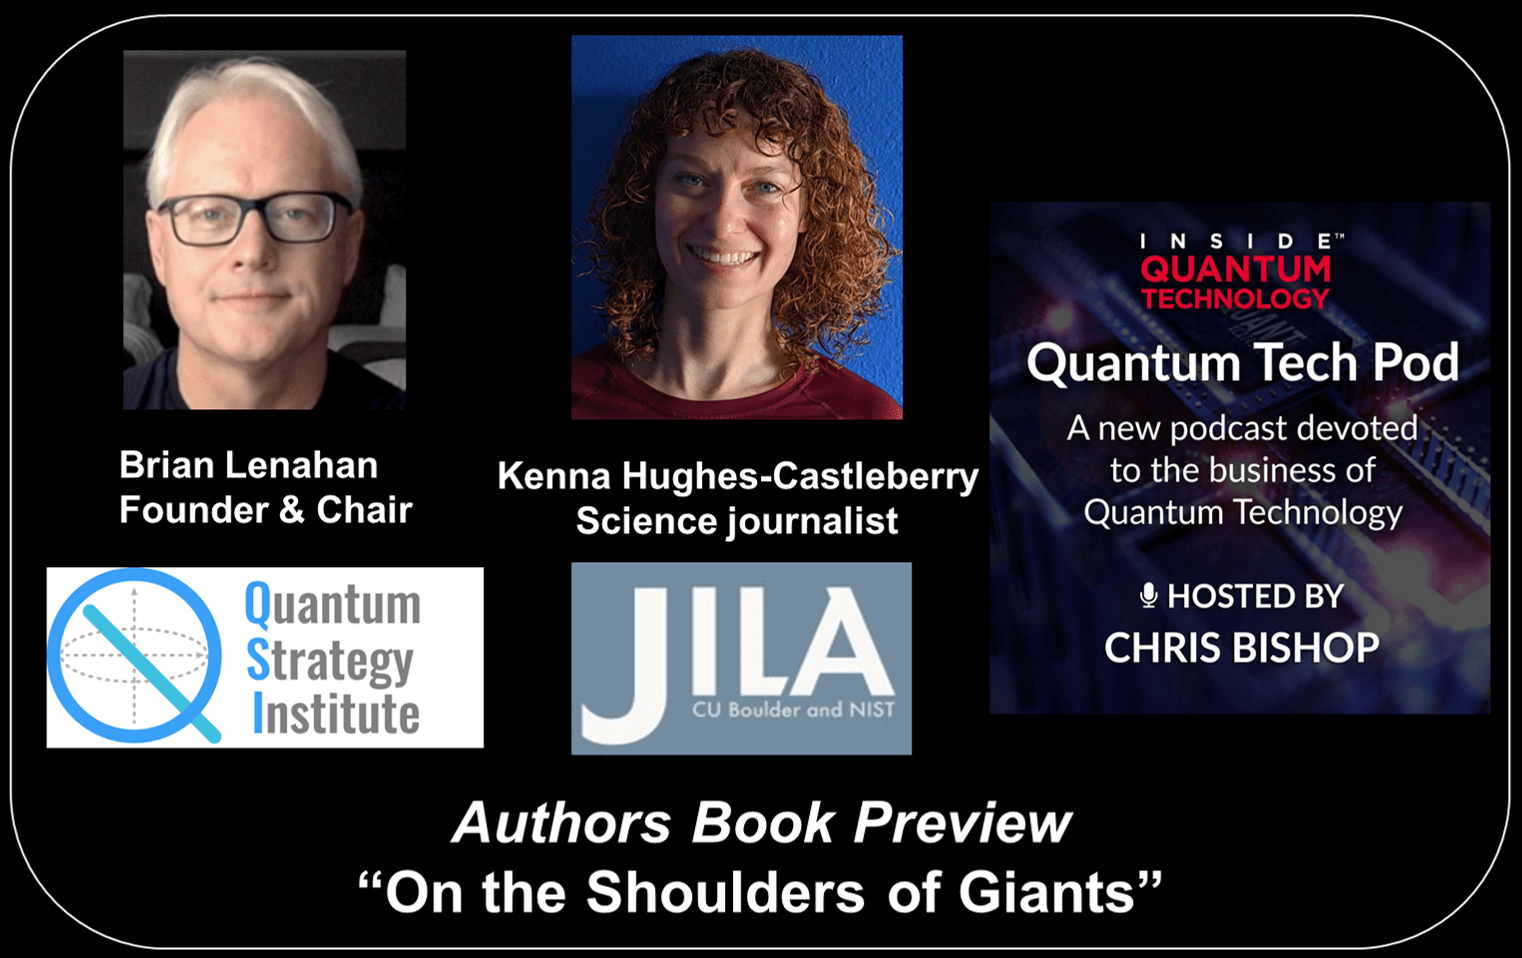 Quantum Tech Pod Епізод 47: Браян Ленахан і Кенна Хьюз-Каслберрі обговорюють свою книгу «На плечах гігантів»